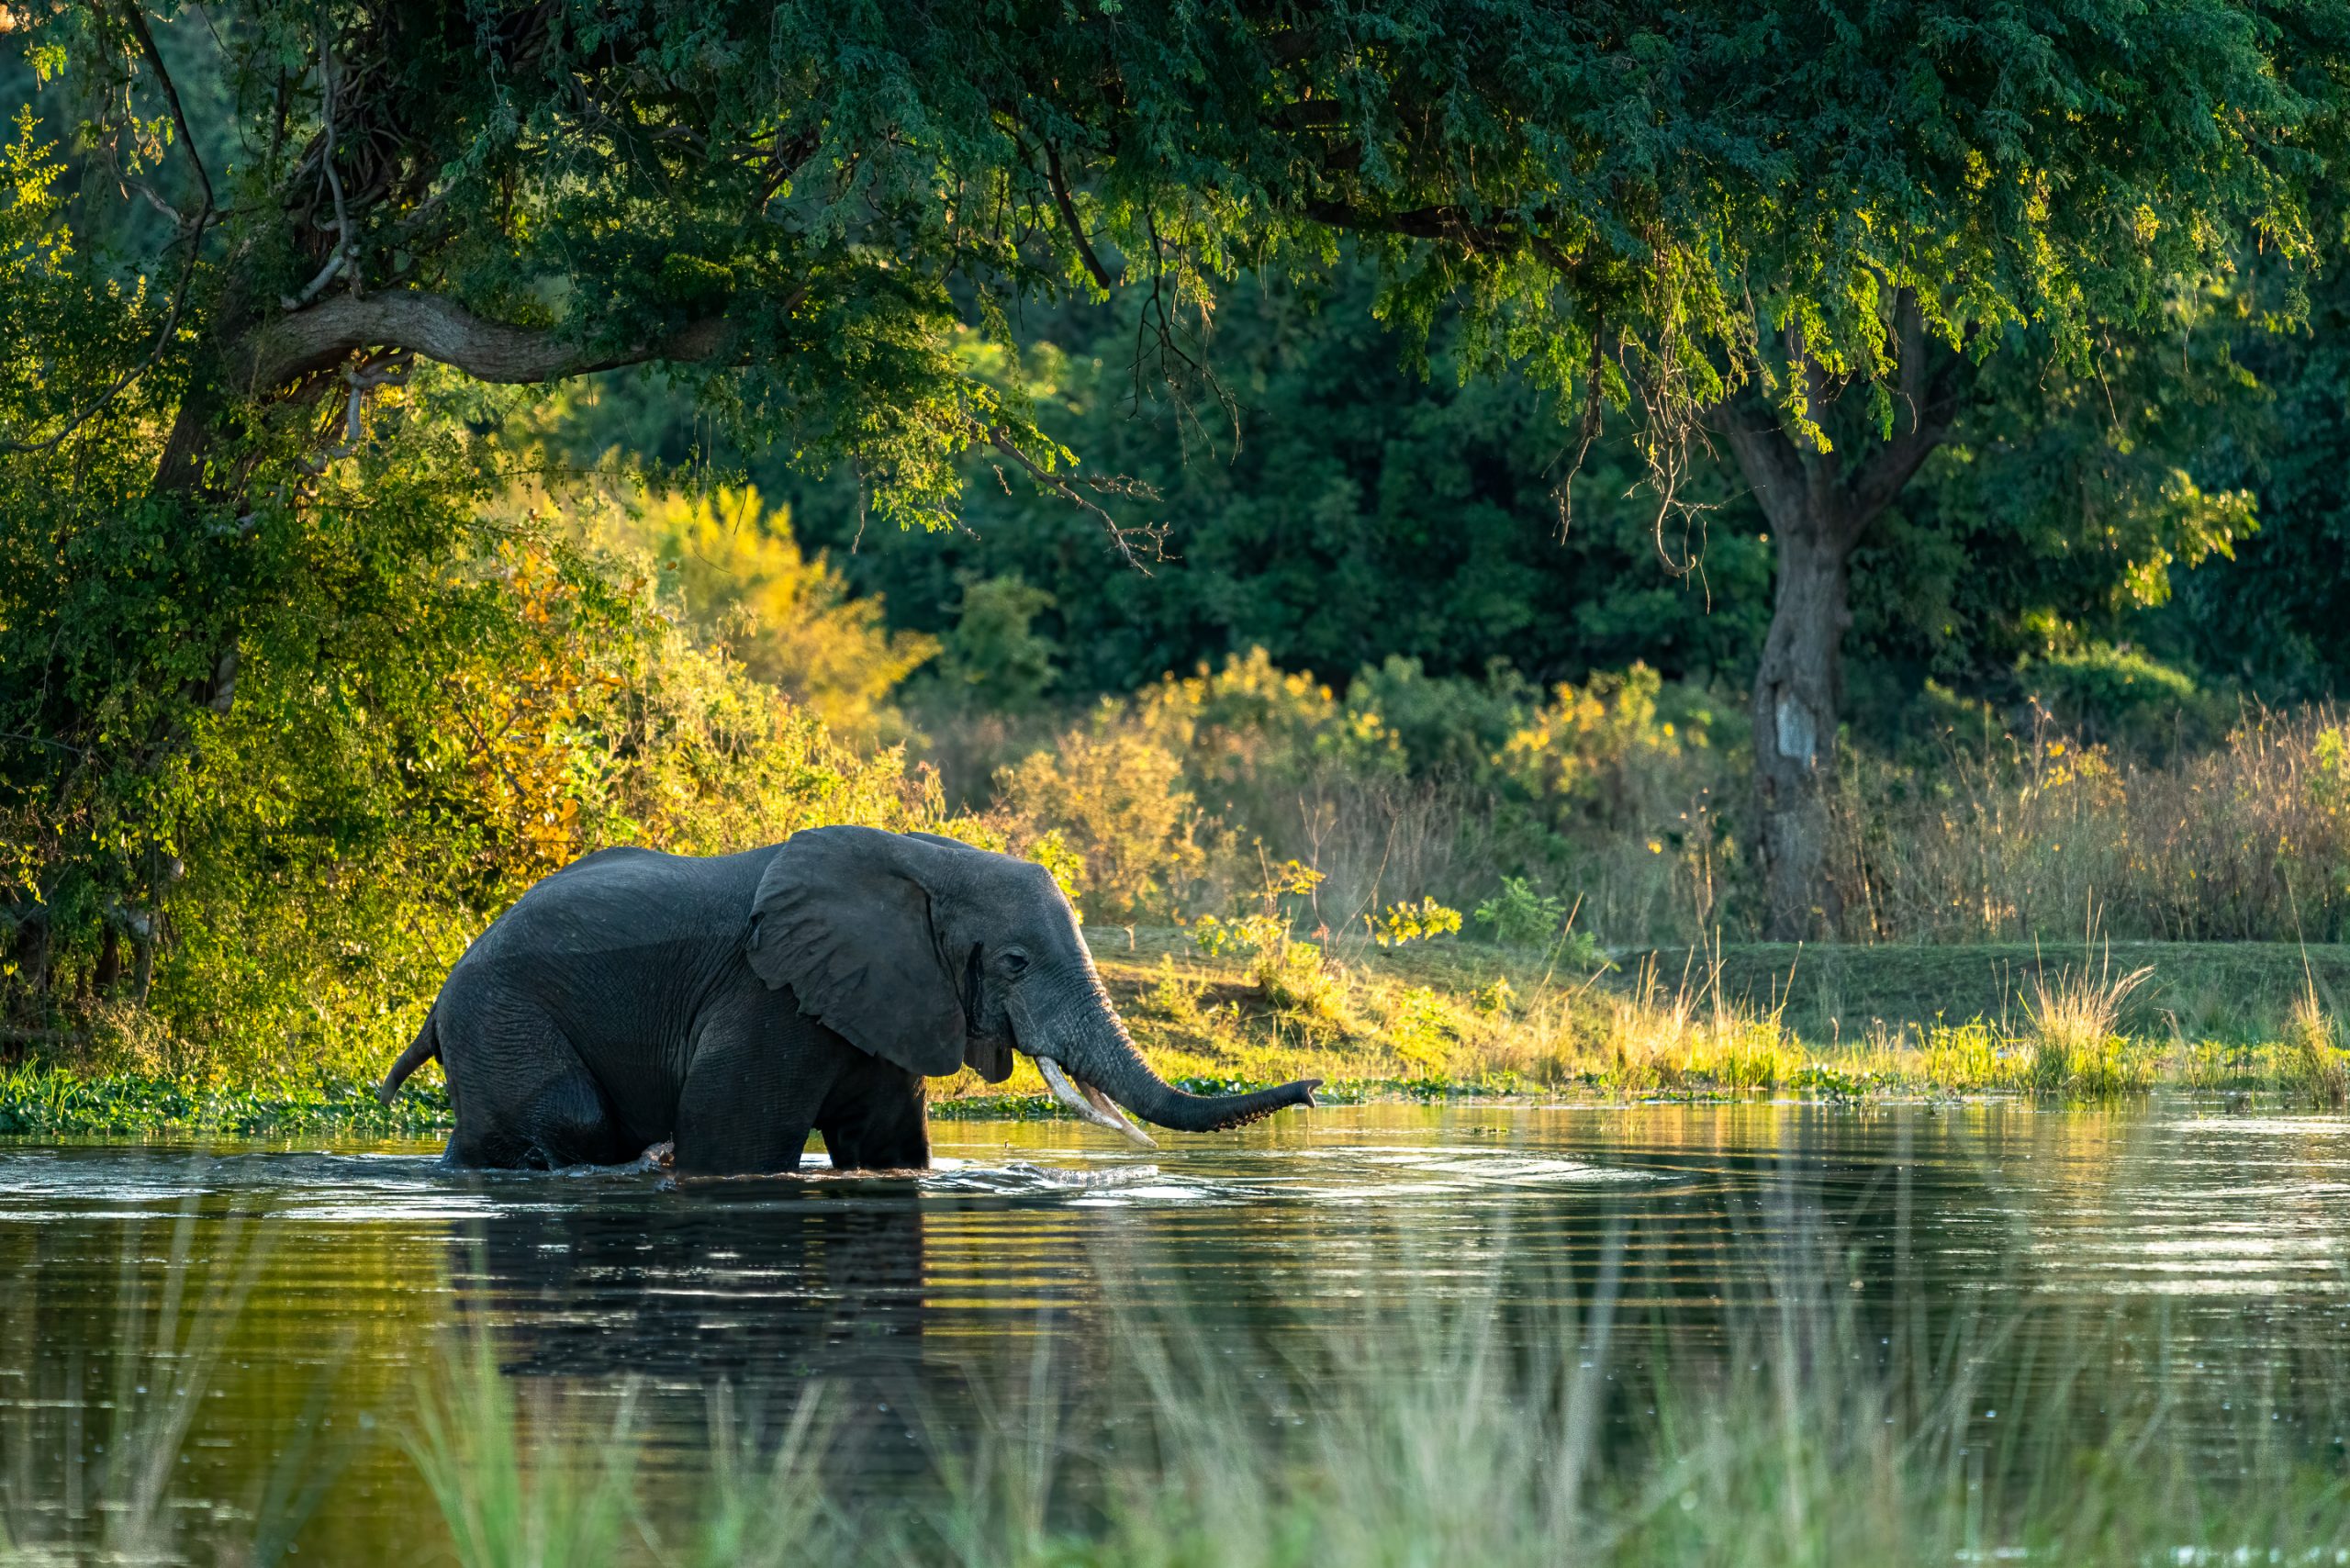 Elephant bull crossing a river channel in the Lower Zambezi National Park in Zambia.